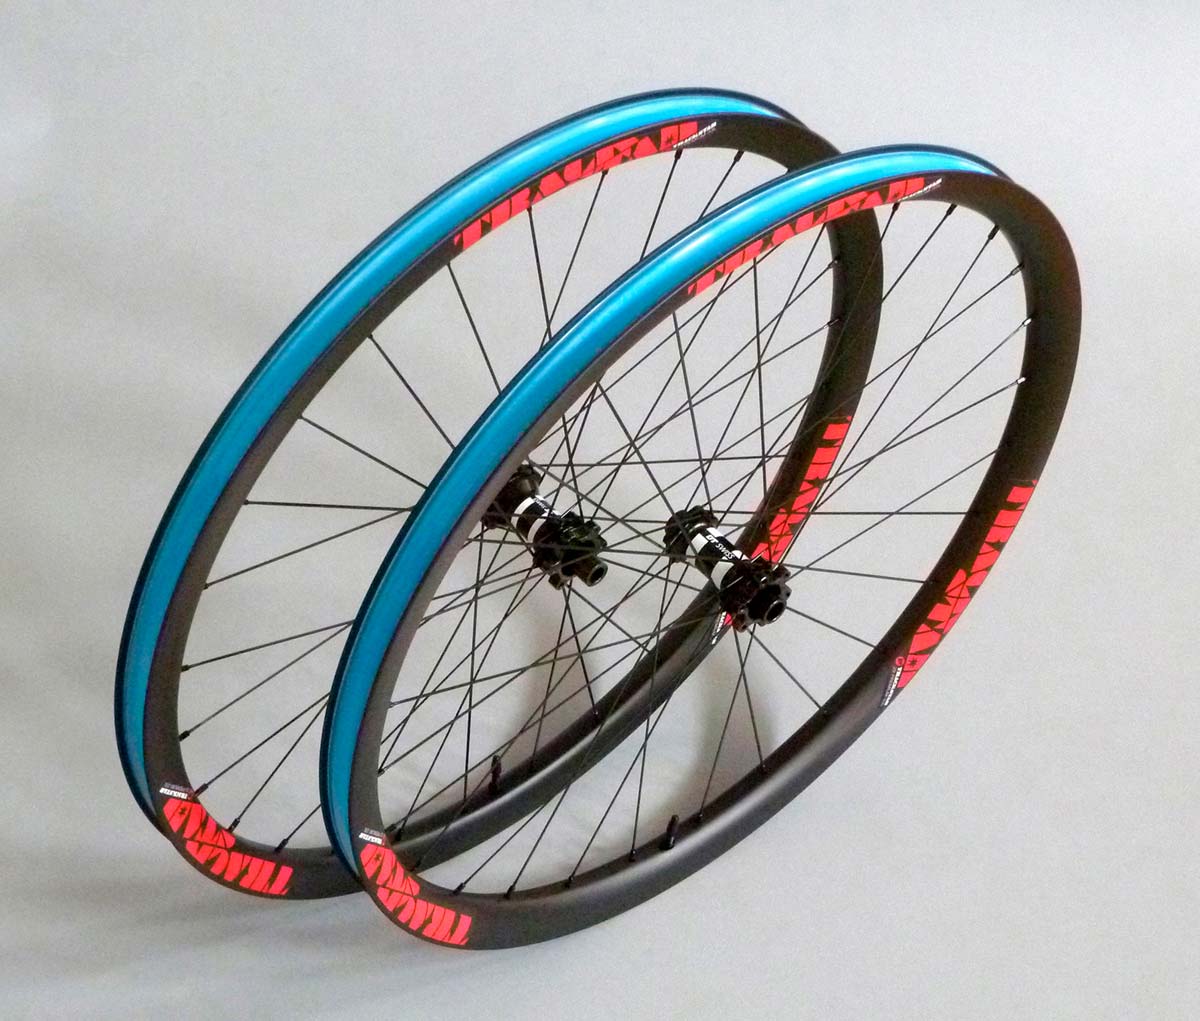 En TodoMountainBike: Trackstar Premium-33L, unas ruedas de carbono ligeras, resistentes y económicas para bicis de XC y Trail